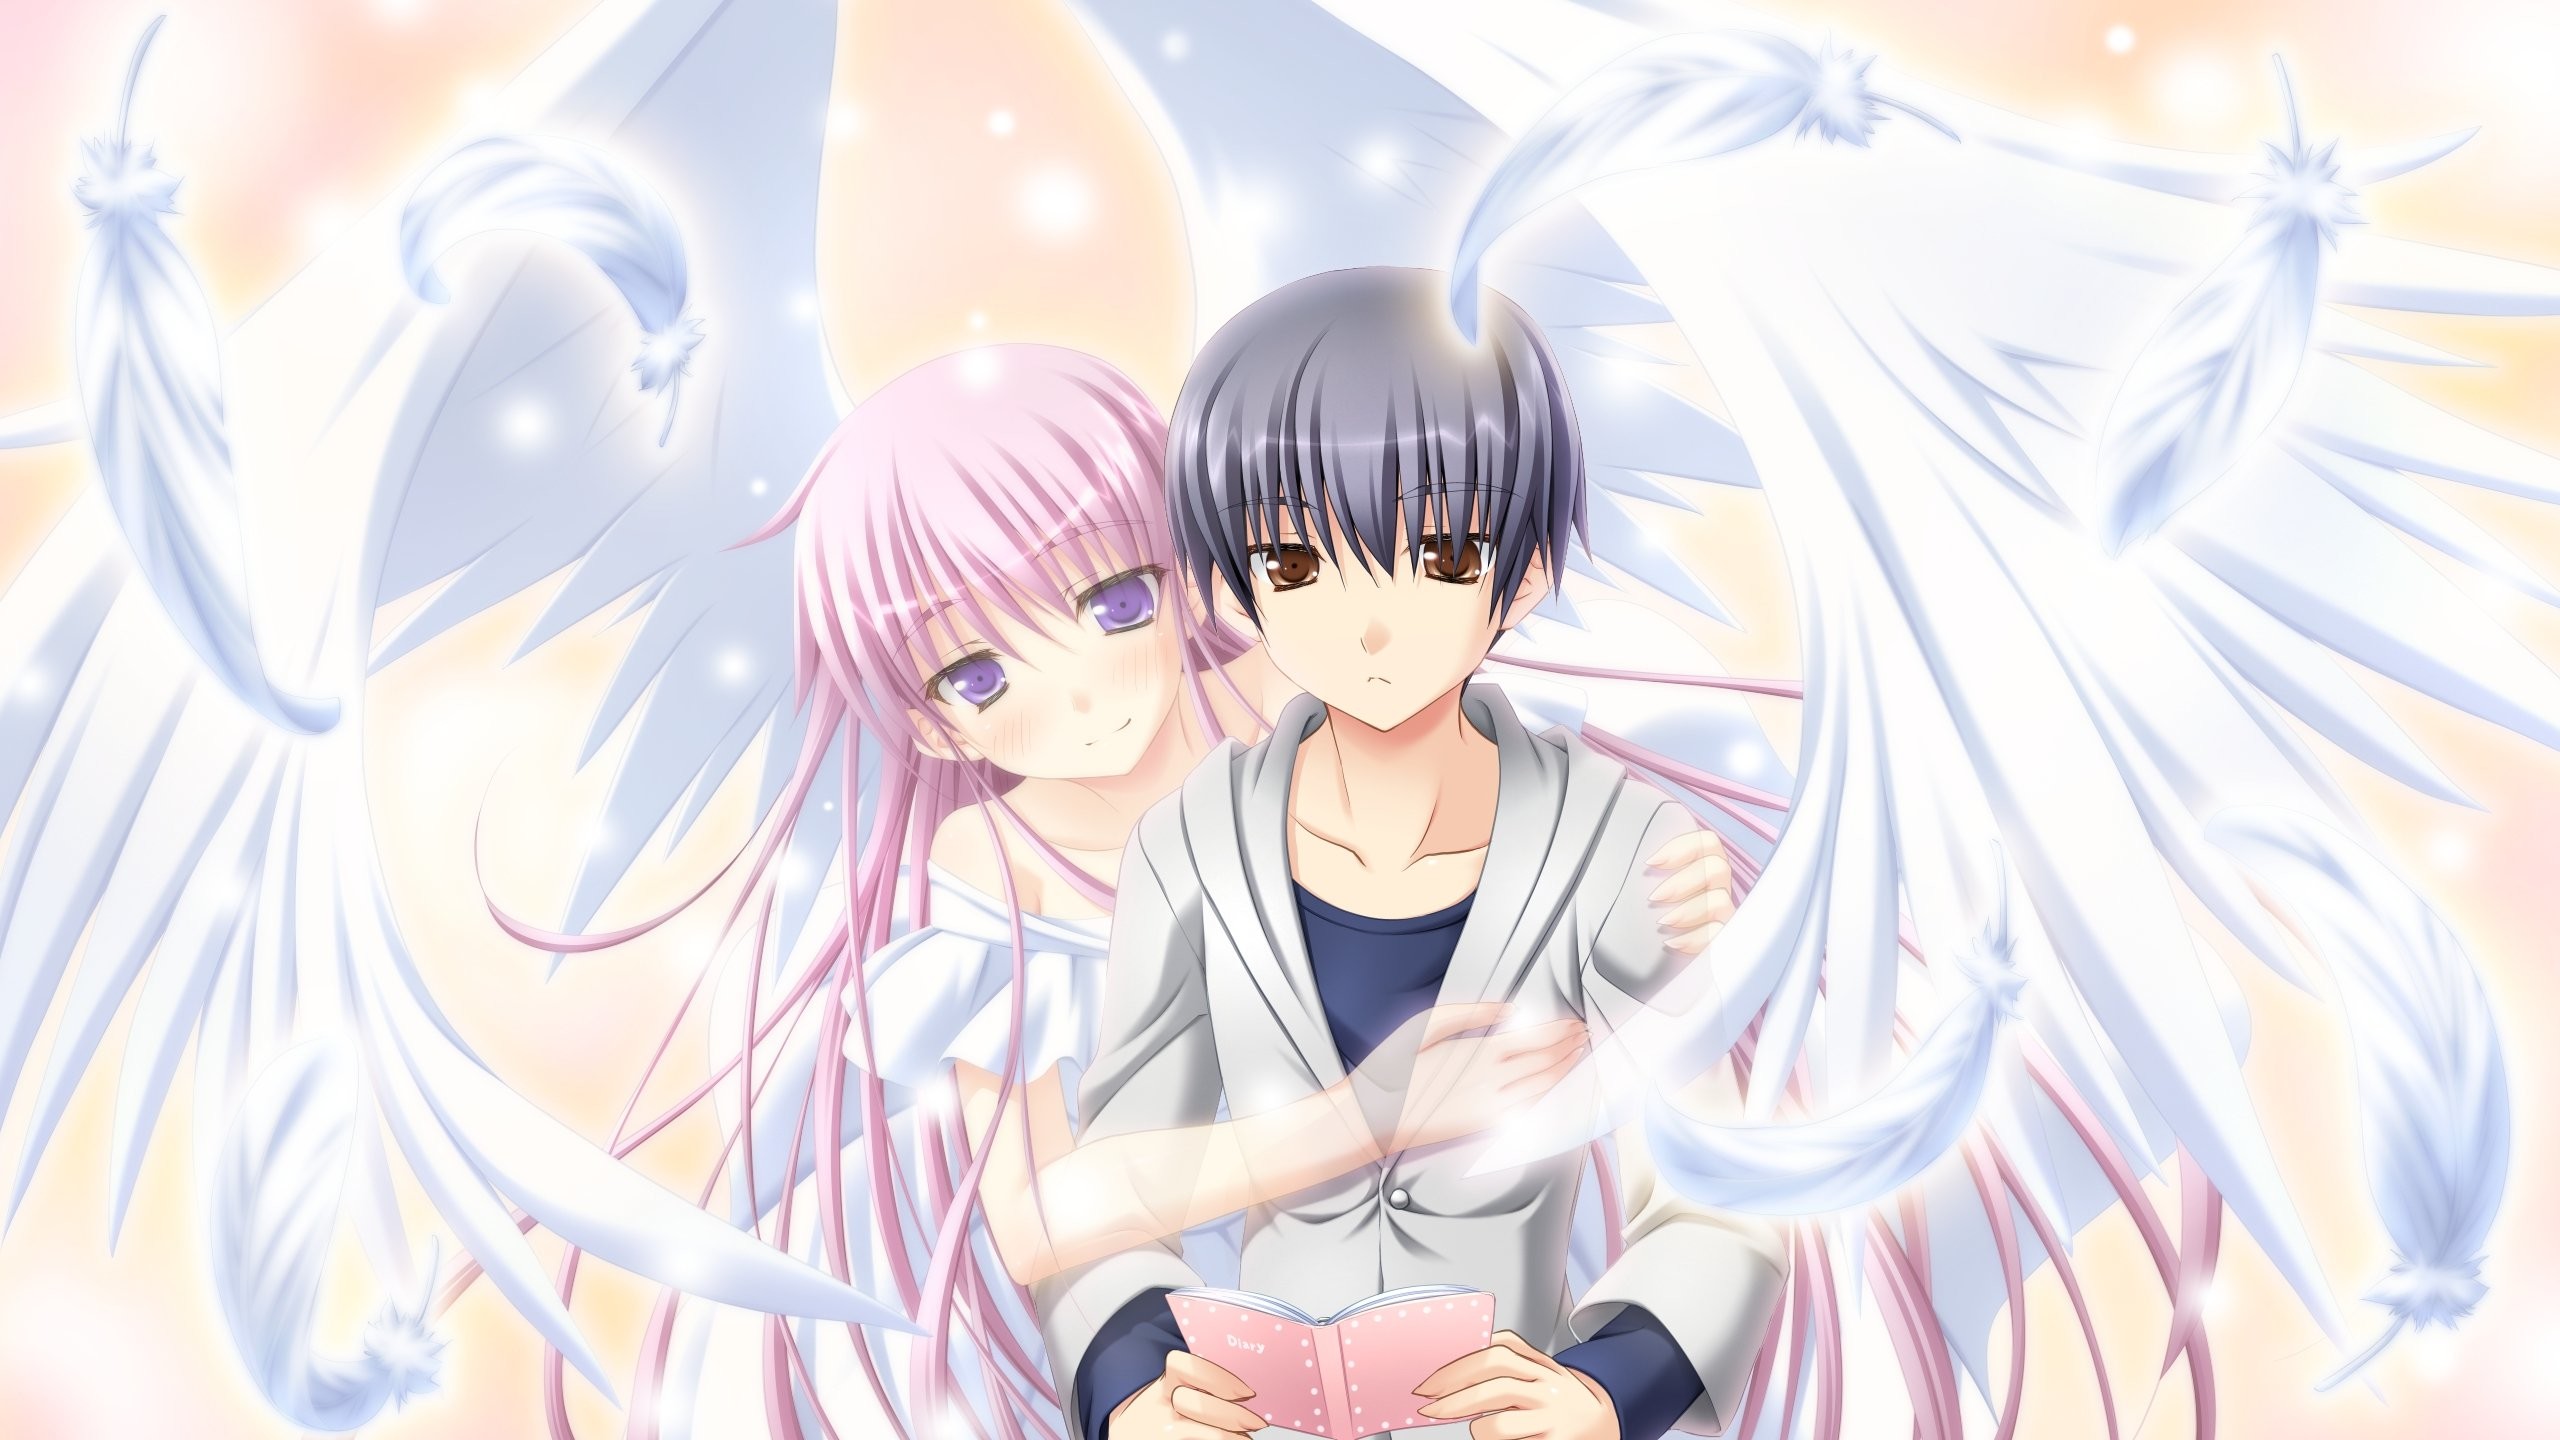 Anime Angel Girl And Boy